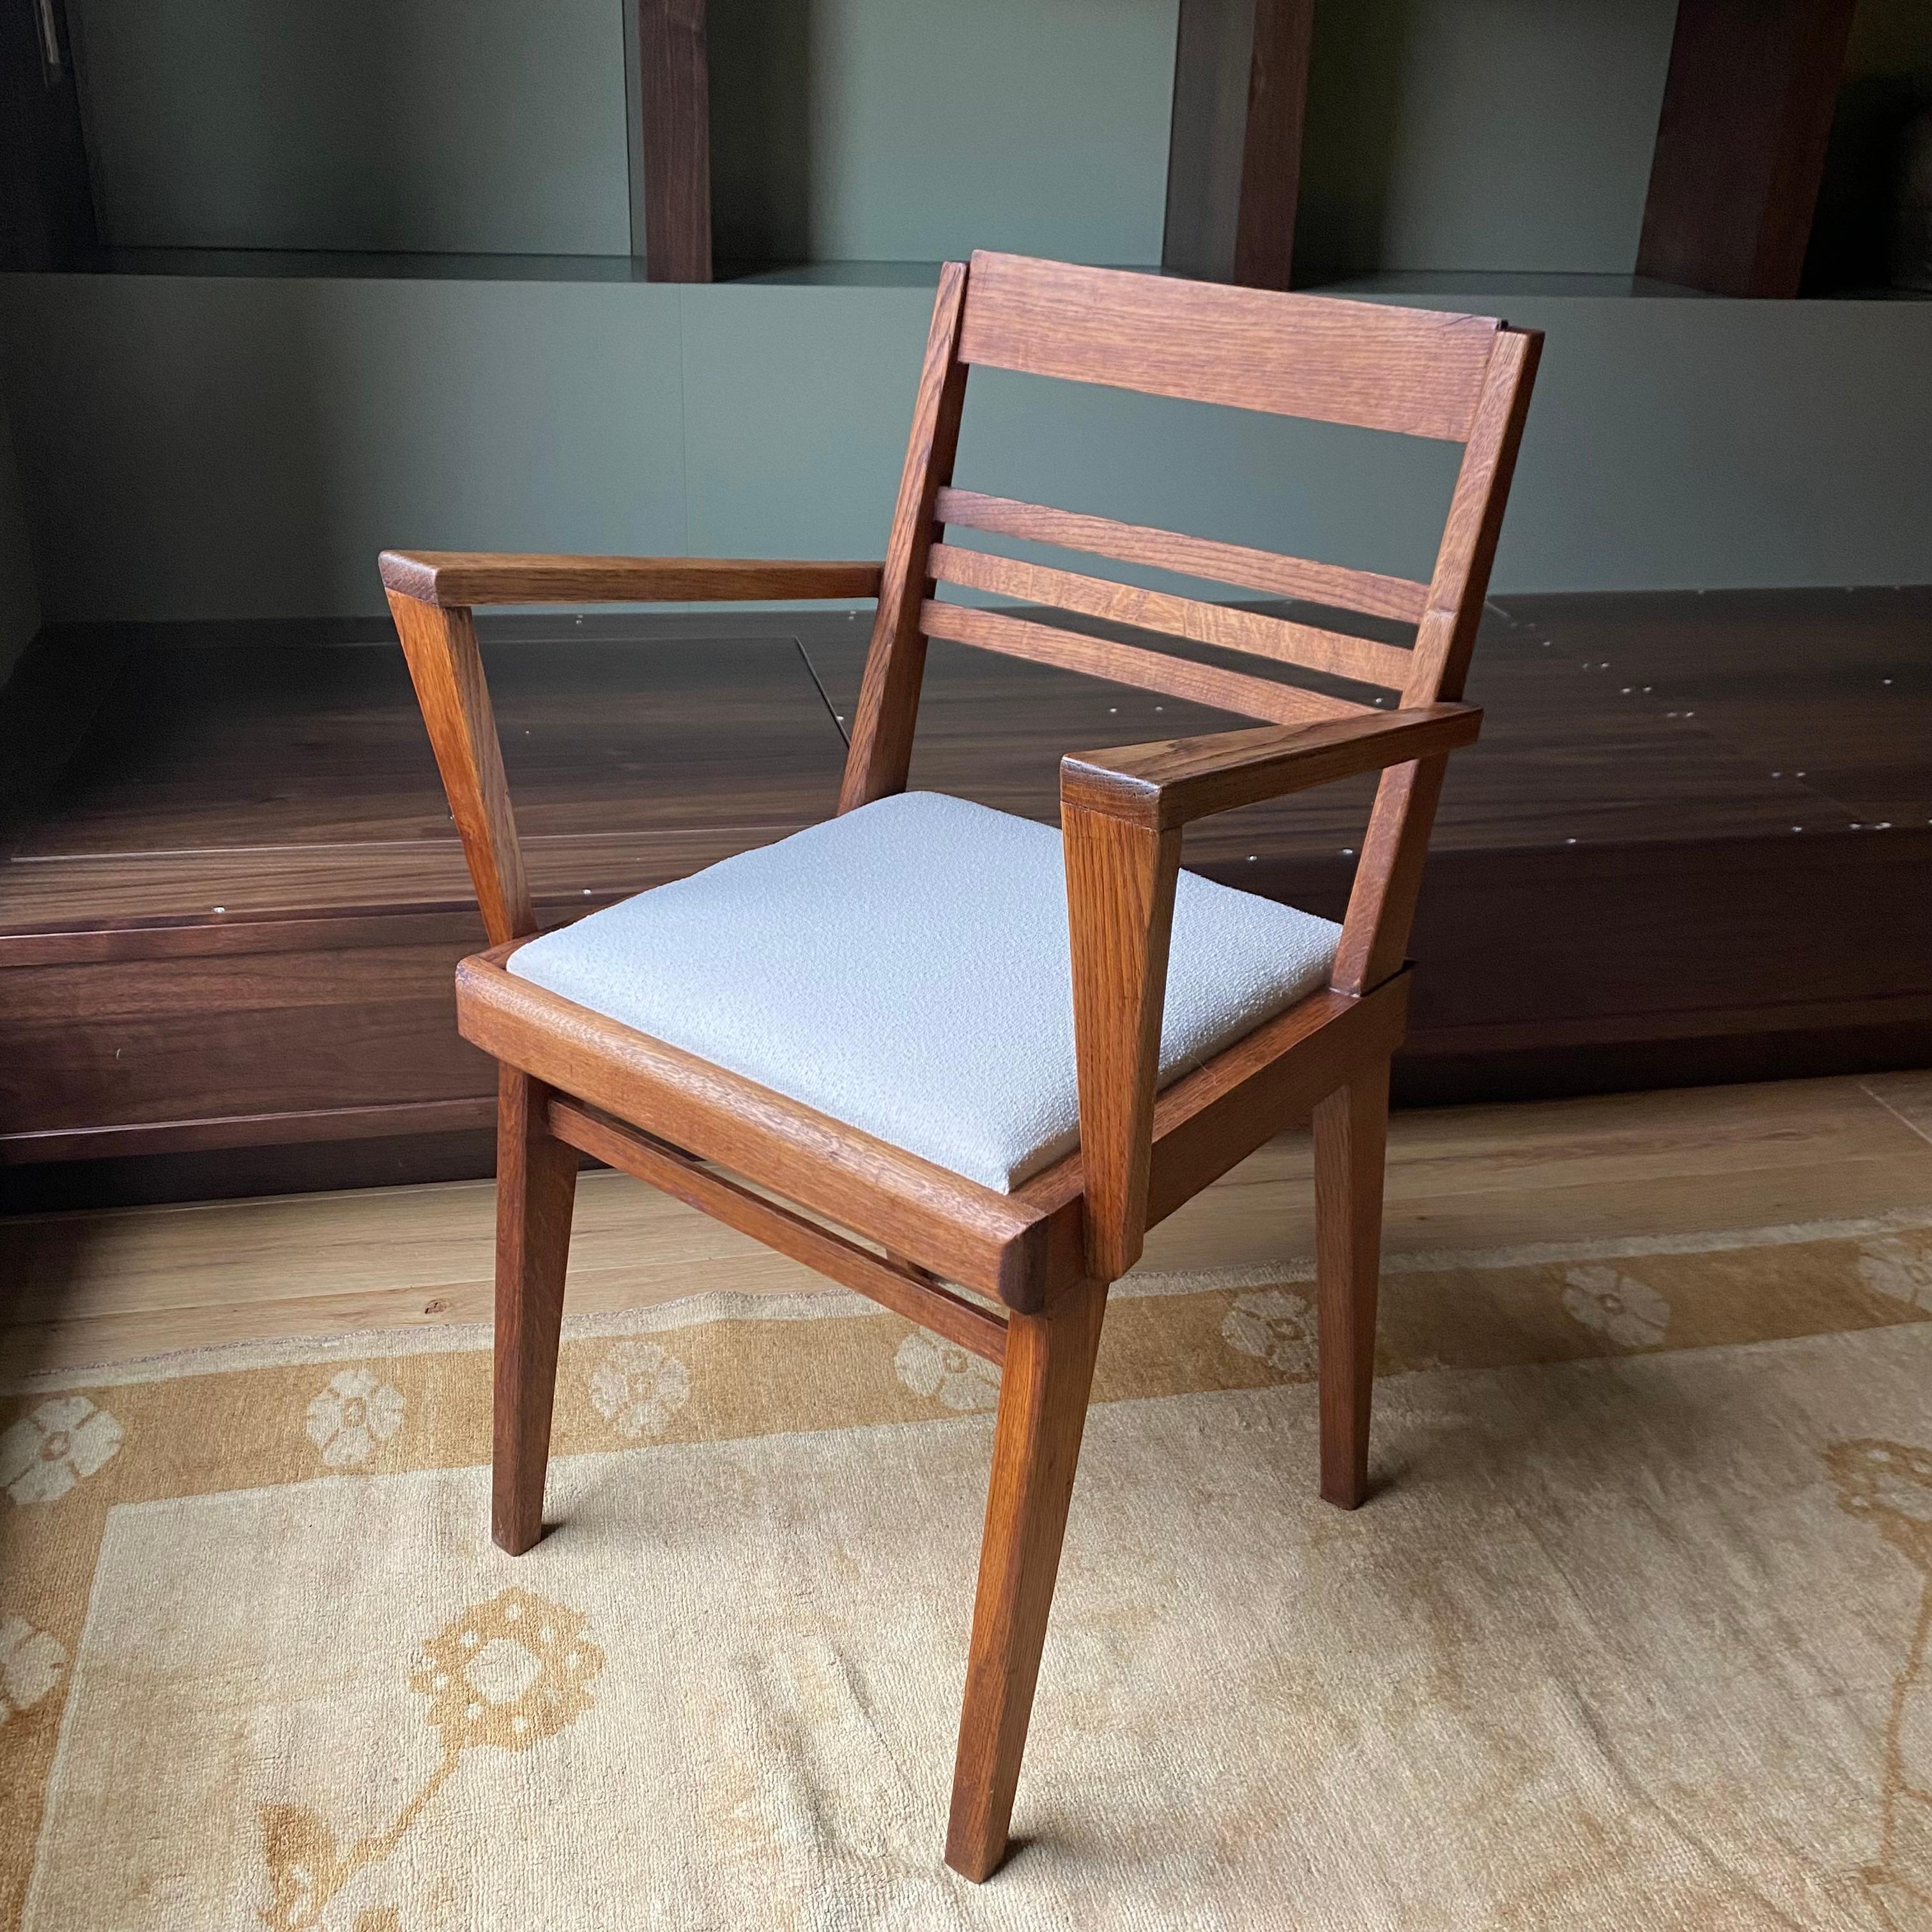 Paire de chaises en bois avec sièges rembourrés. Vers les années 60. L'état est conforme à l'âge et à l'utilisation de l'objet.